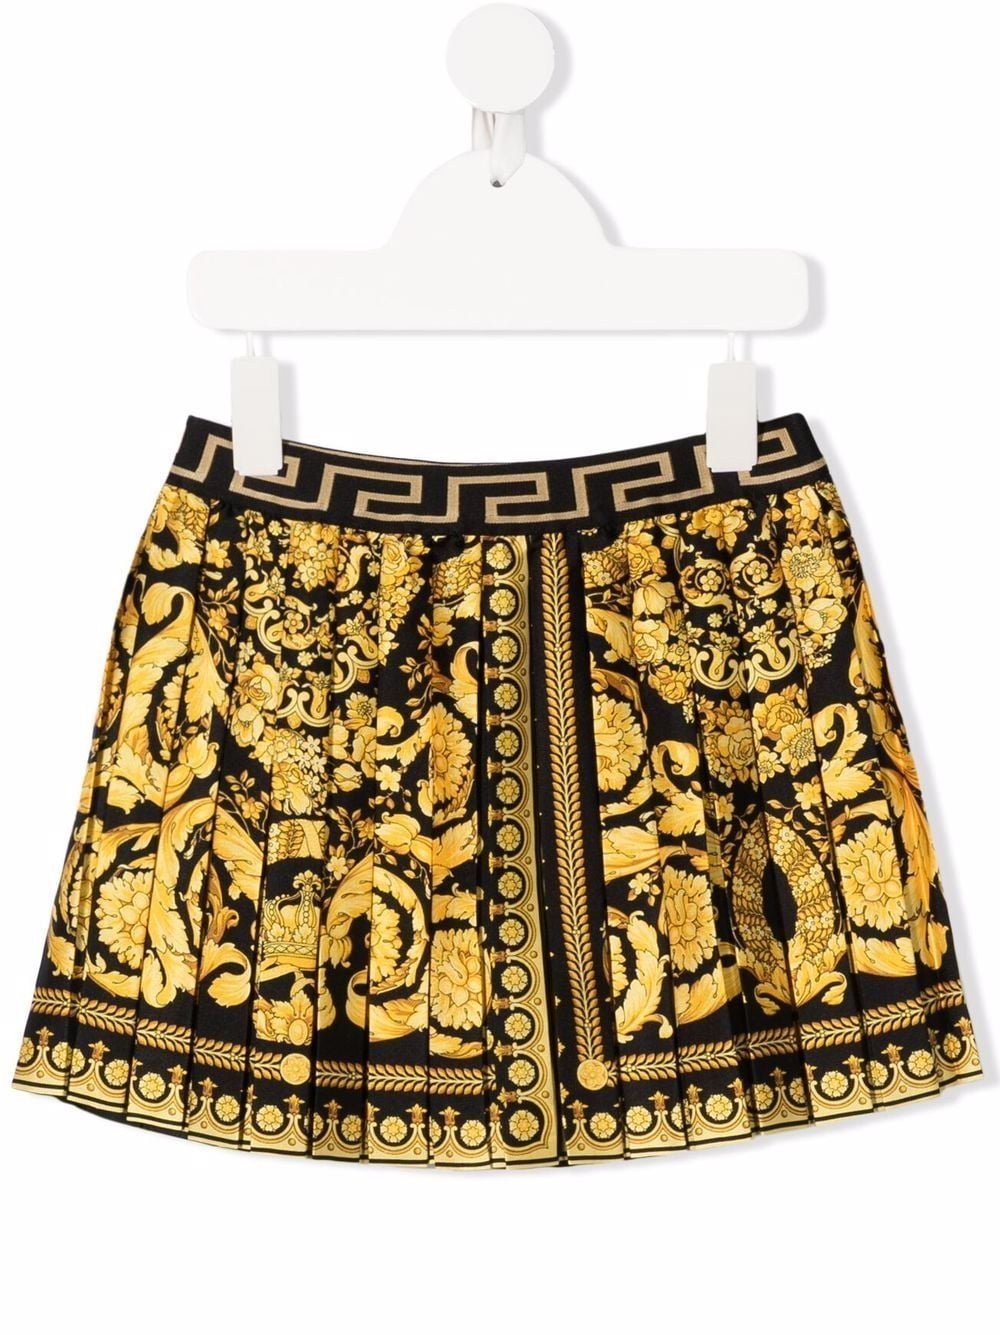 Black and gold skirt for girls